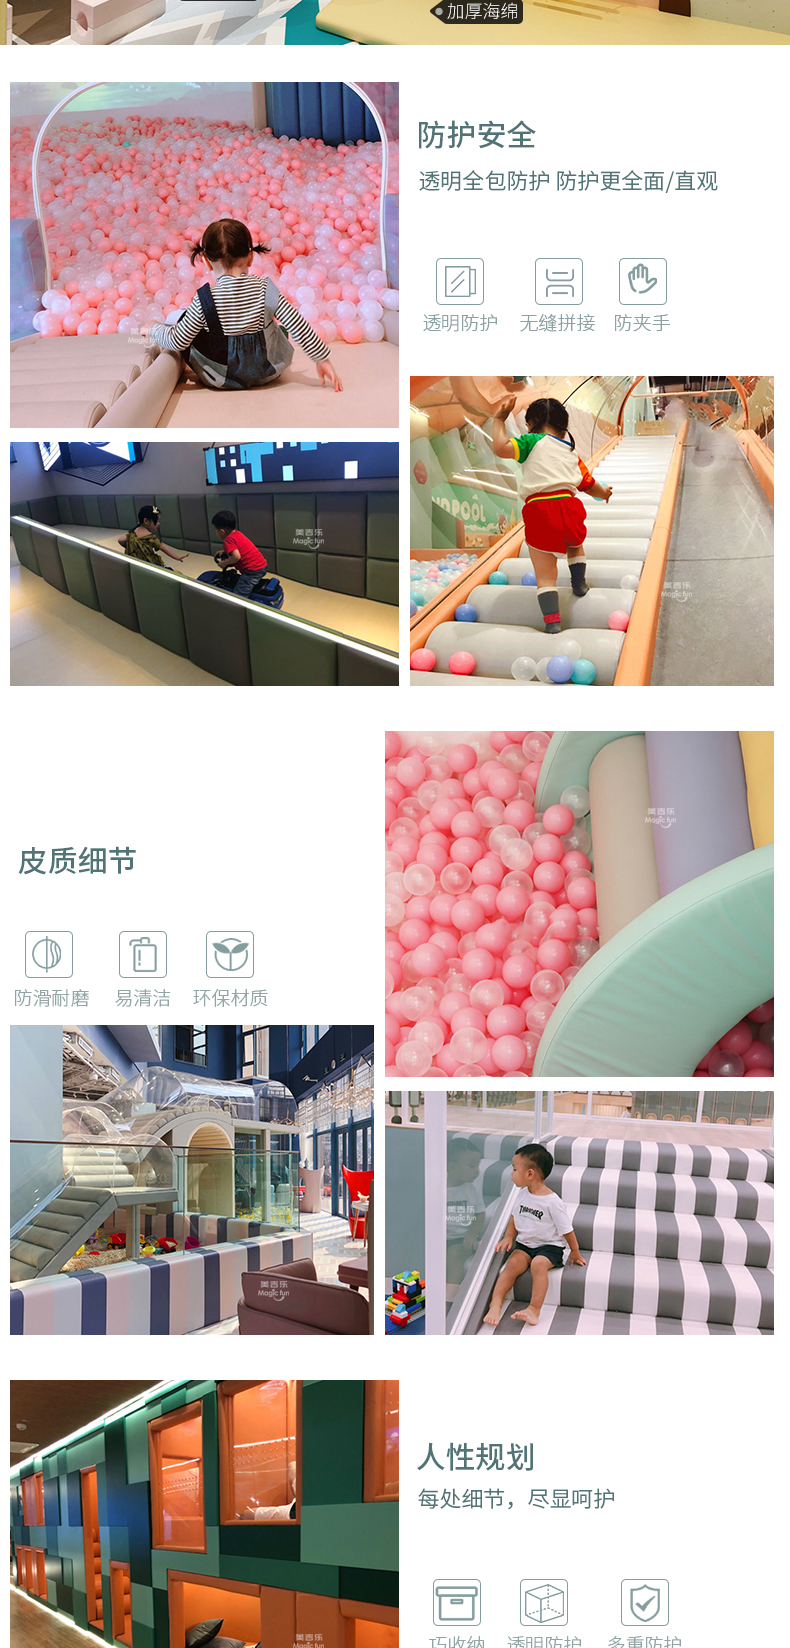 武汉游乐场室内设备 淘气堡儿童乐园 大型亲子餐厅 15